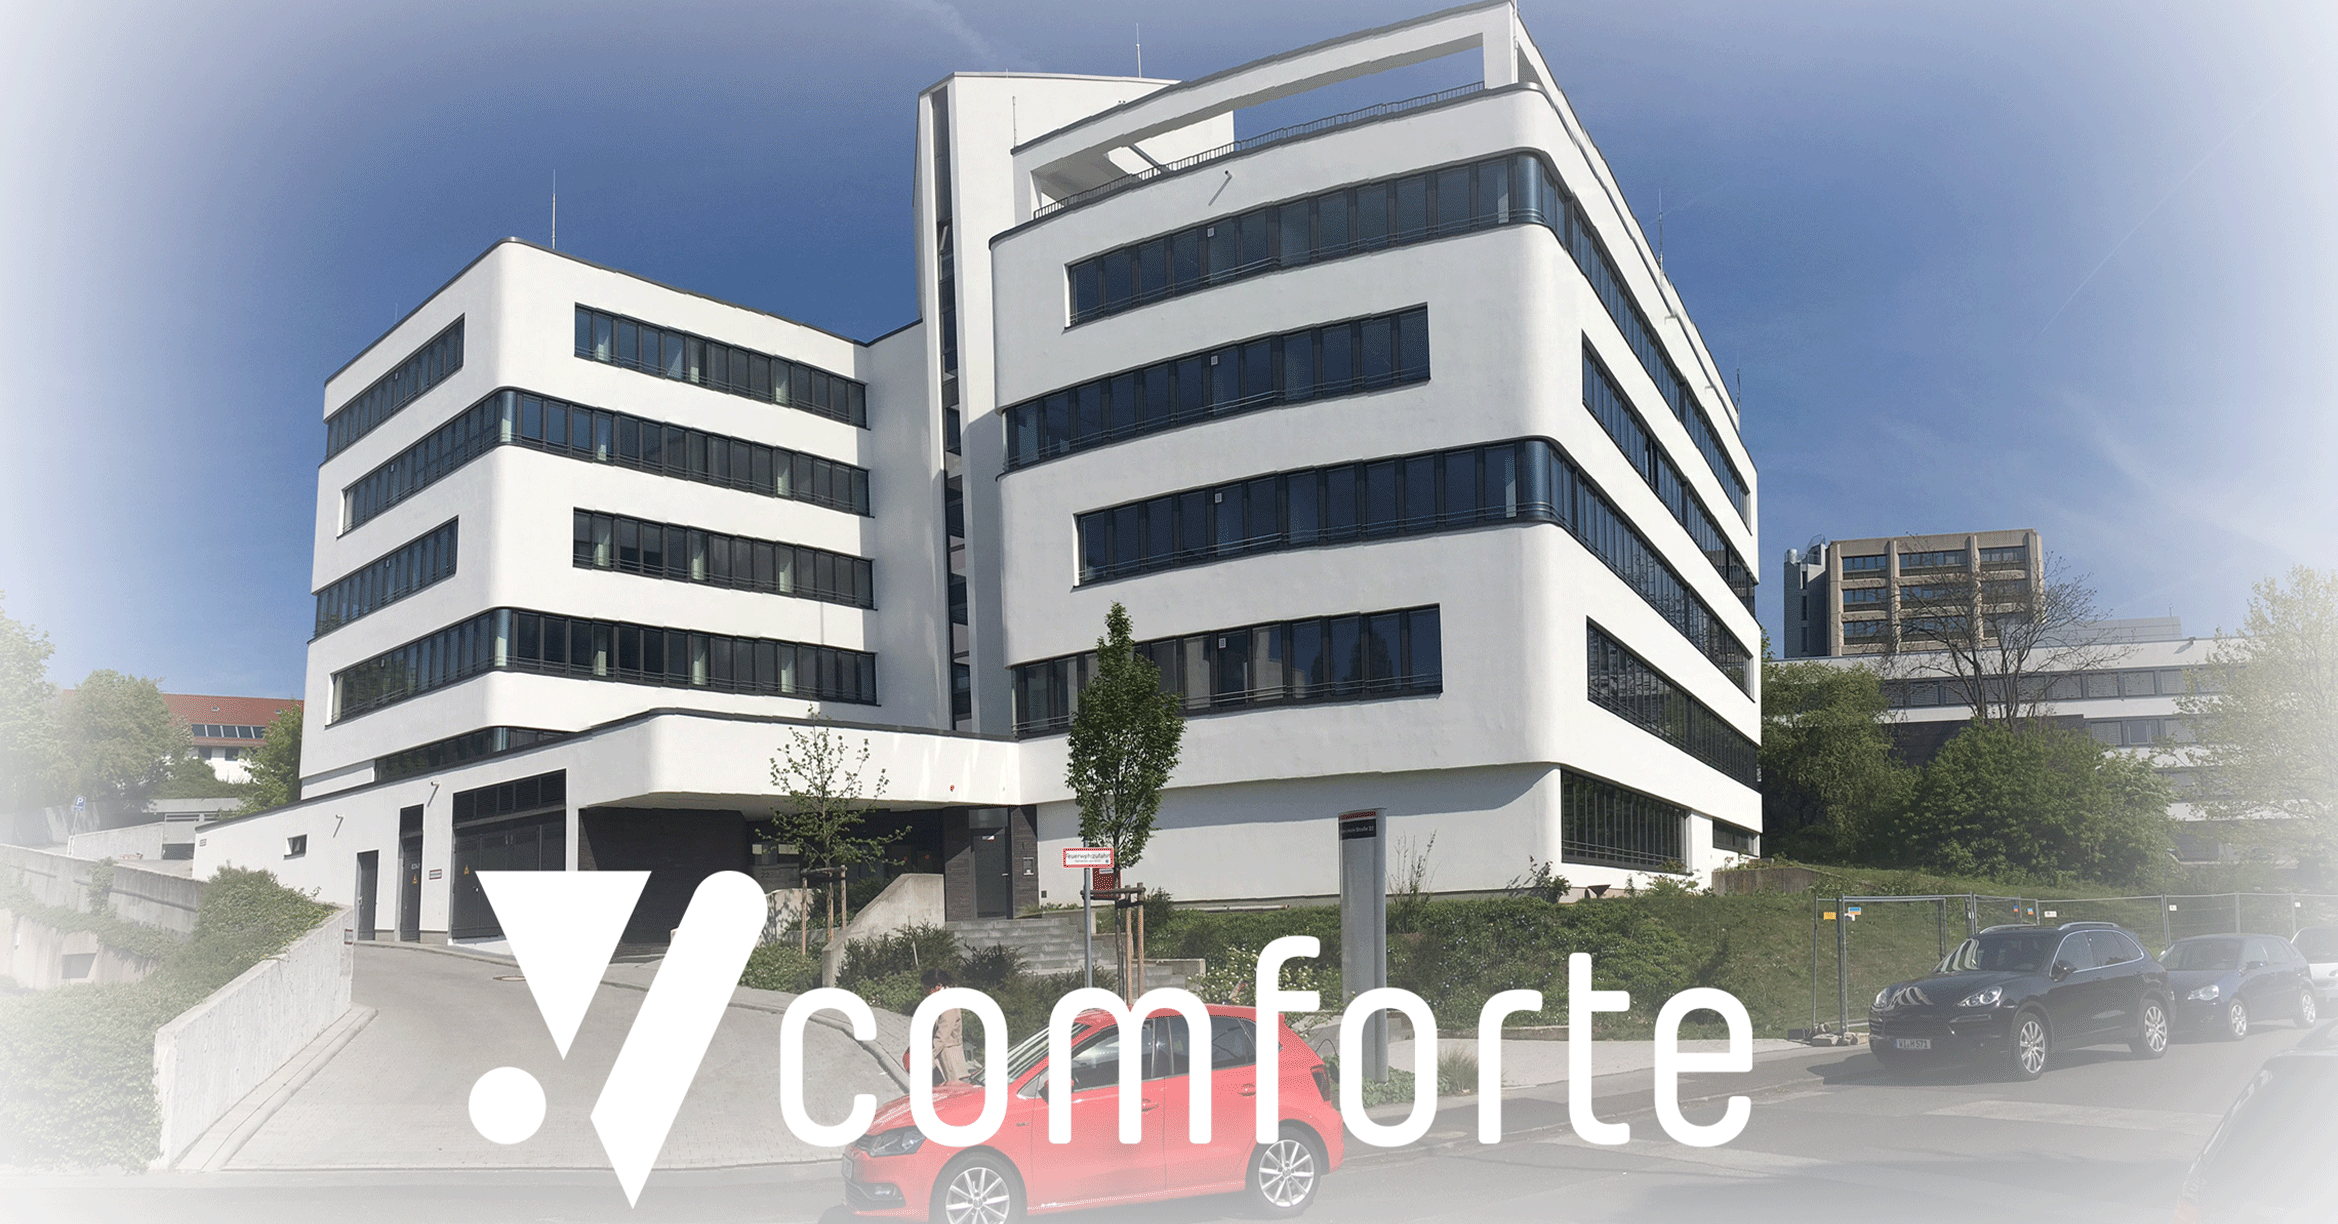 comforte AG headquarters